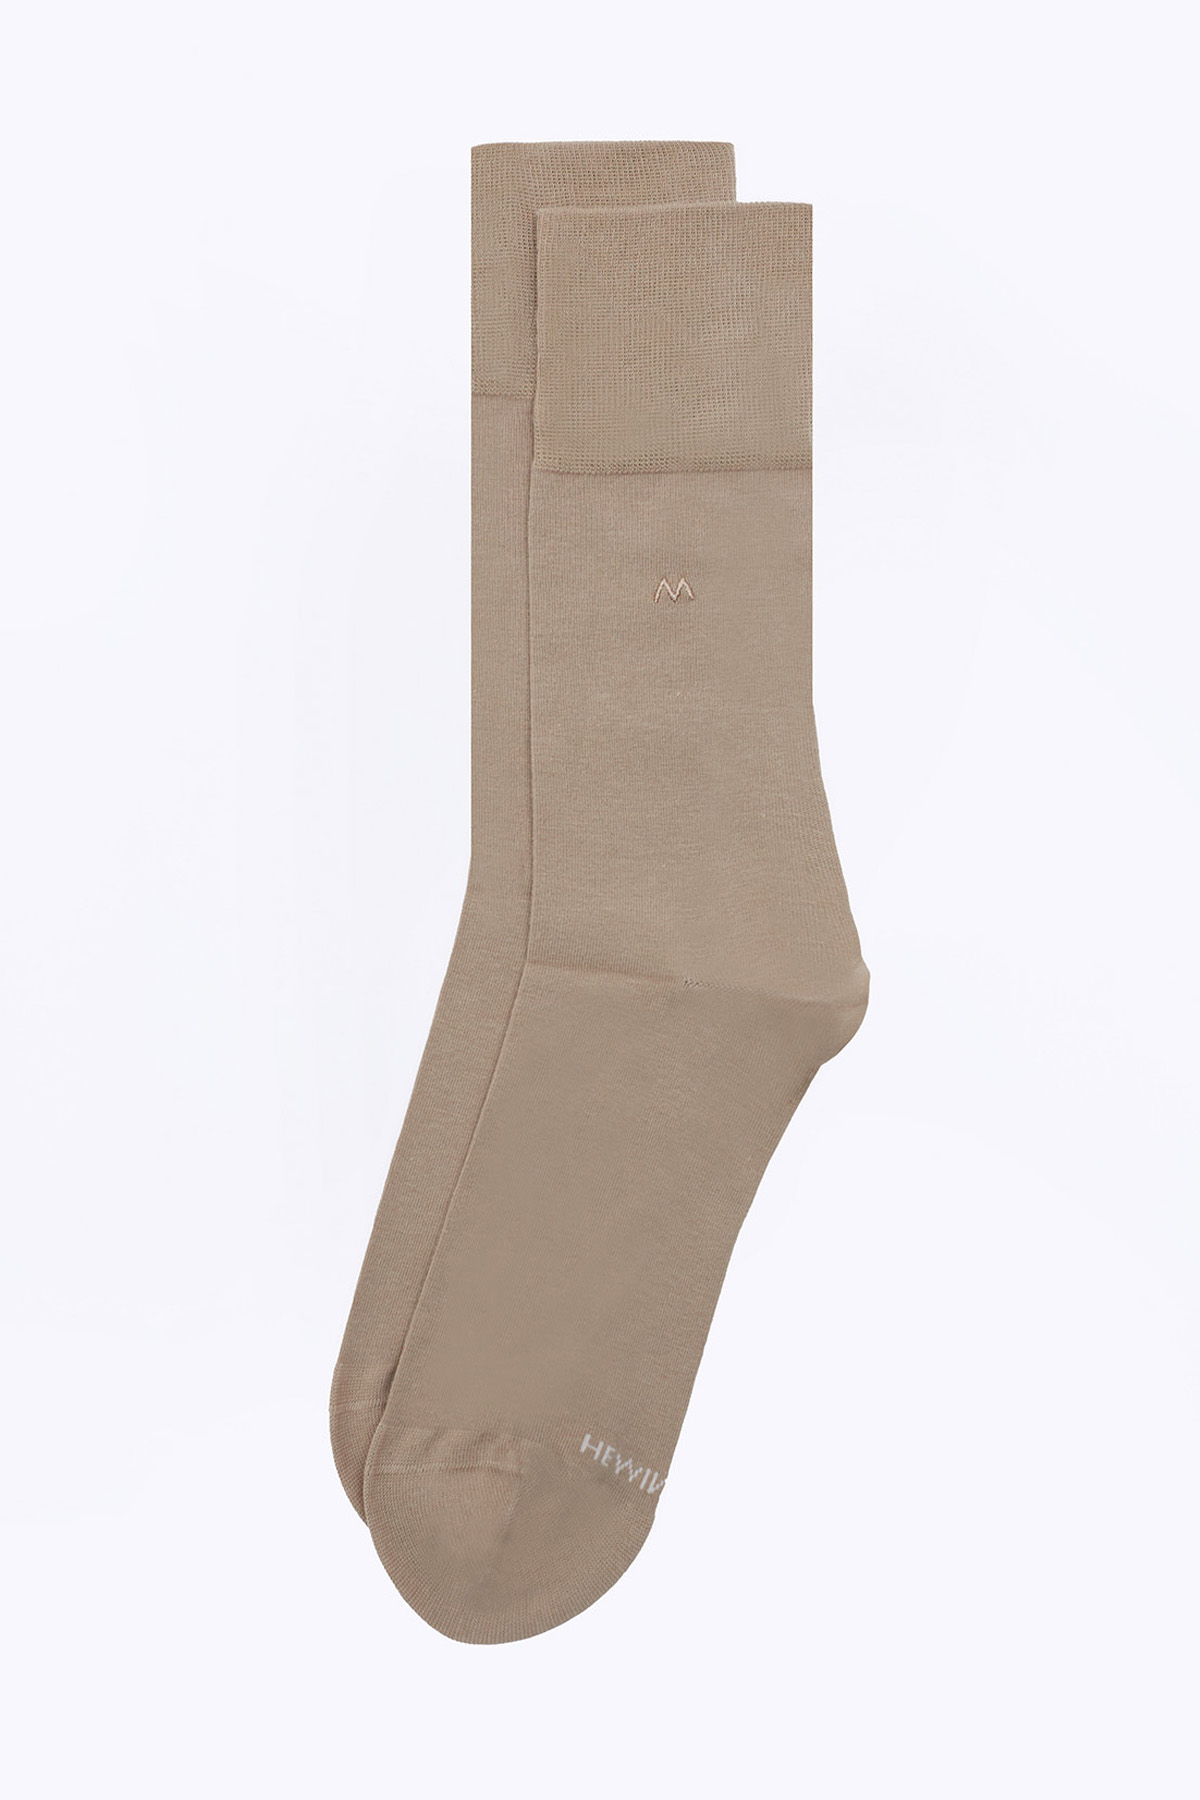 Kum Rengi Pamuklu Yazlık Çorap